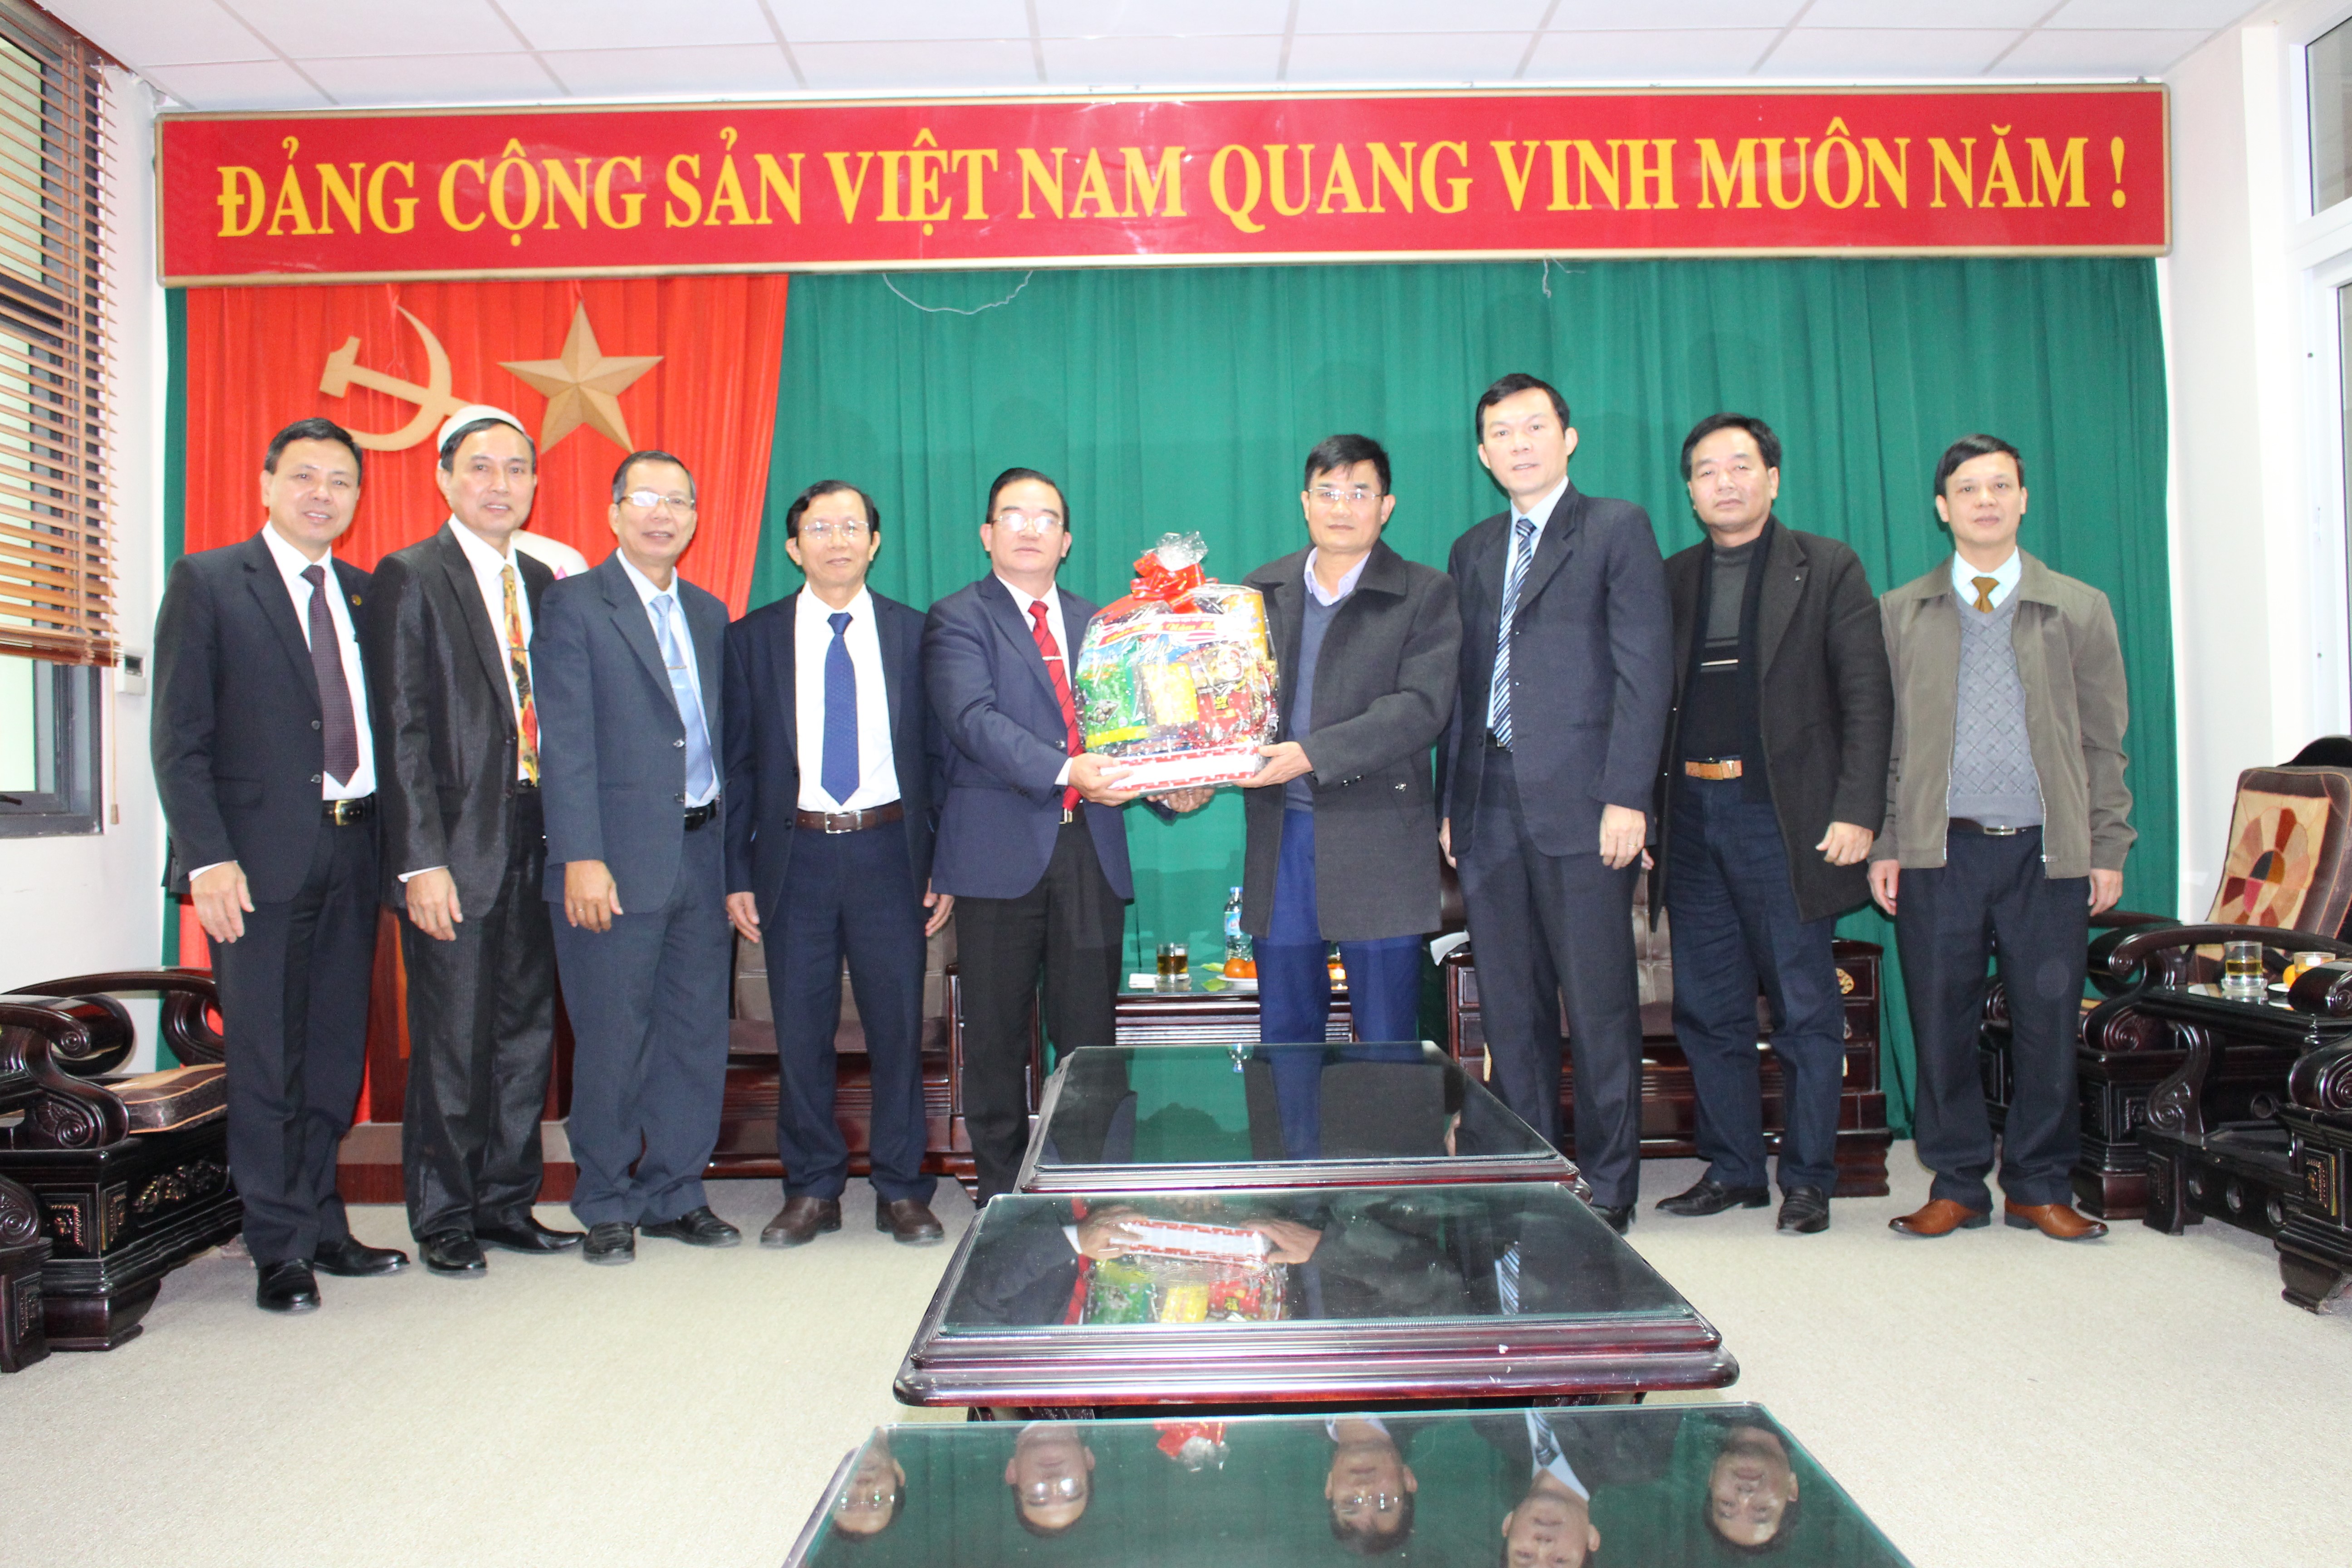 Sở Nội vụ tỉnh Bắc Giang tiếp Đoàn Hội thánh Phúc Âm Toàn Vẹn Việt Nam và Đoàn Hội thánh Liên hiệp Truyền giáo Việt Nam đến thăm nhân dịp Tết Nguyên đán Kỷ Hợi năm 2019